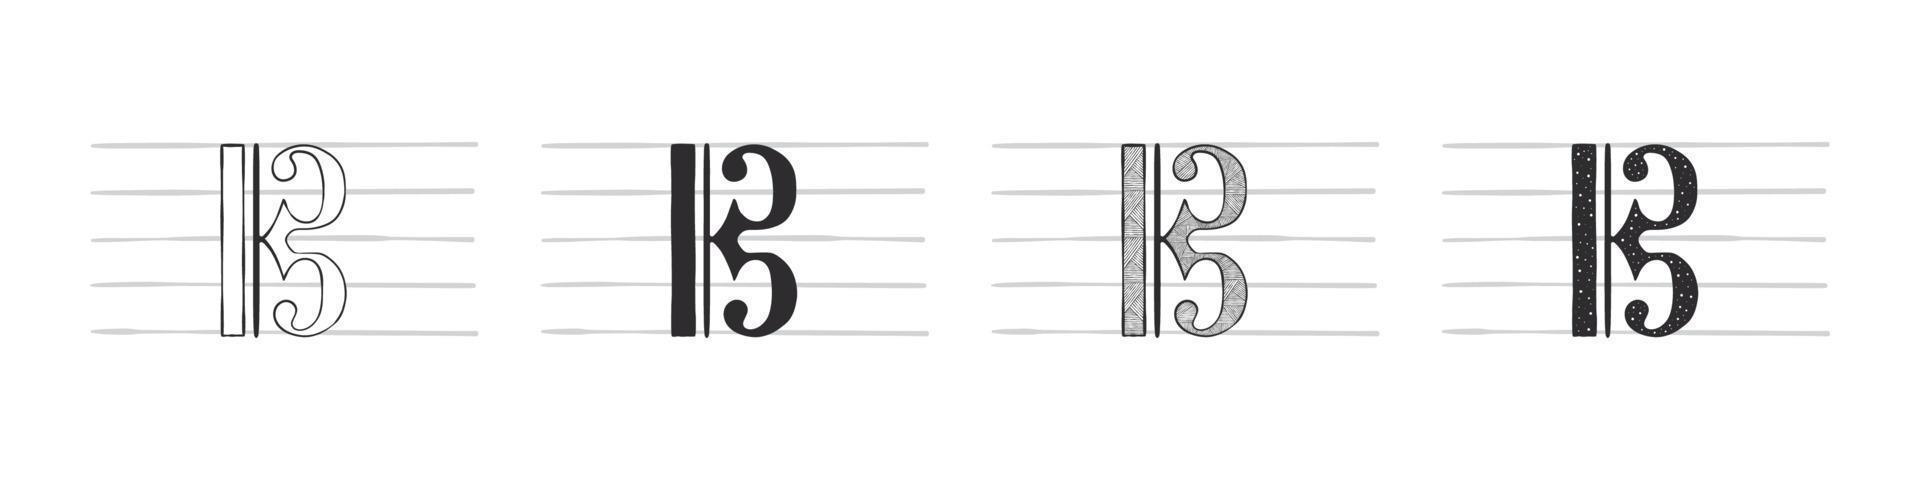 notas musicais. símbolo musical com uma chave. símbolos musicais desenhados à mão em várias variações. ilustração vetorial vetor